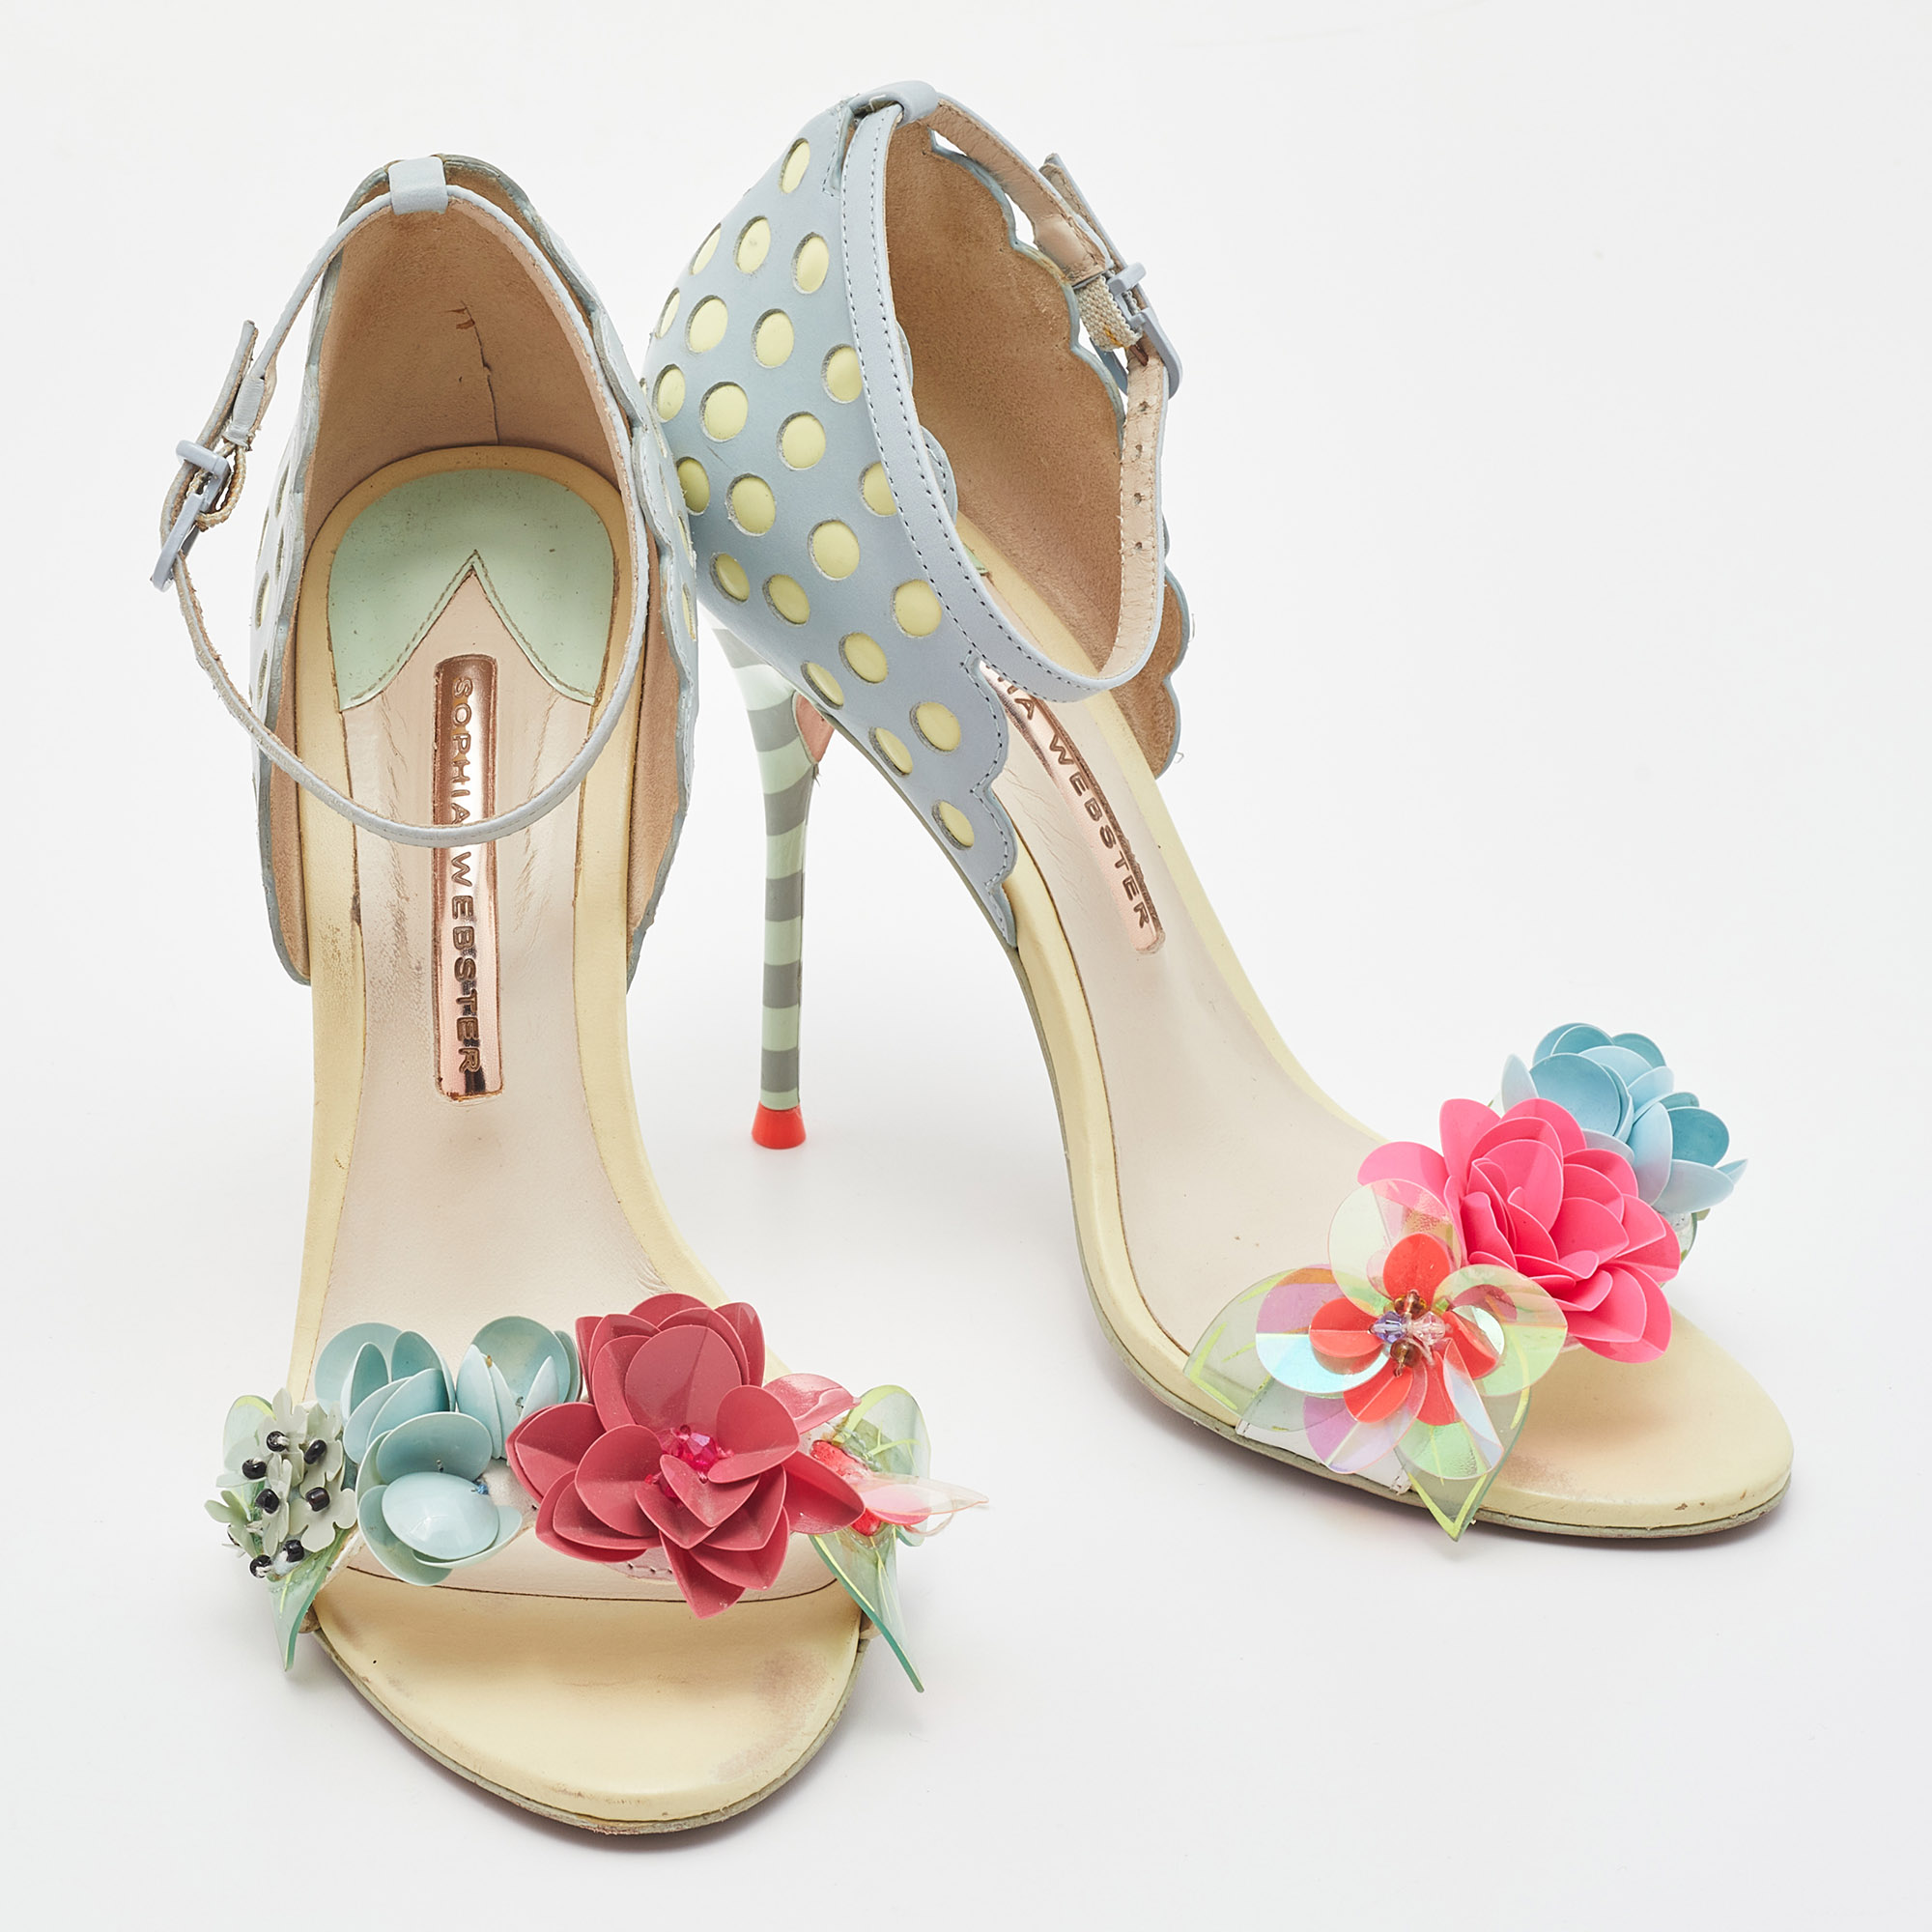 Sophia Webster Multicolor Leather Lilico Floral Embellished Ankle Strap Sandals Size 37